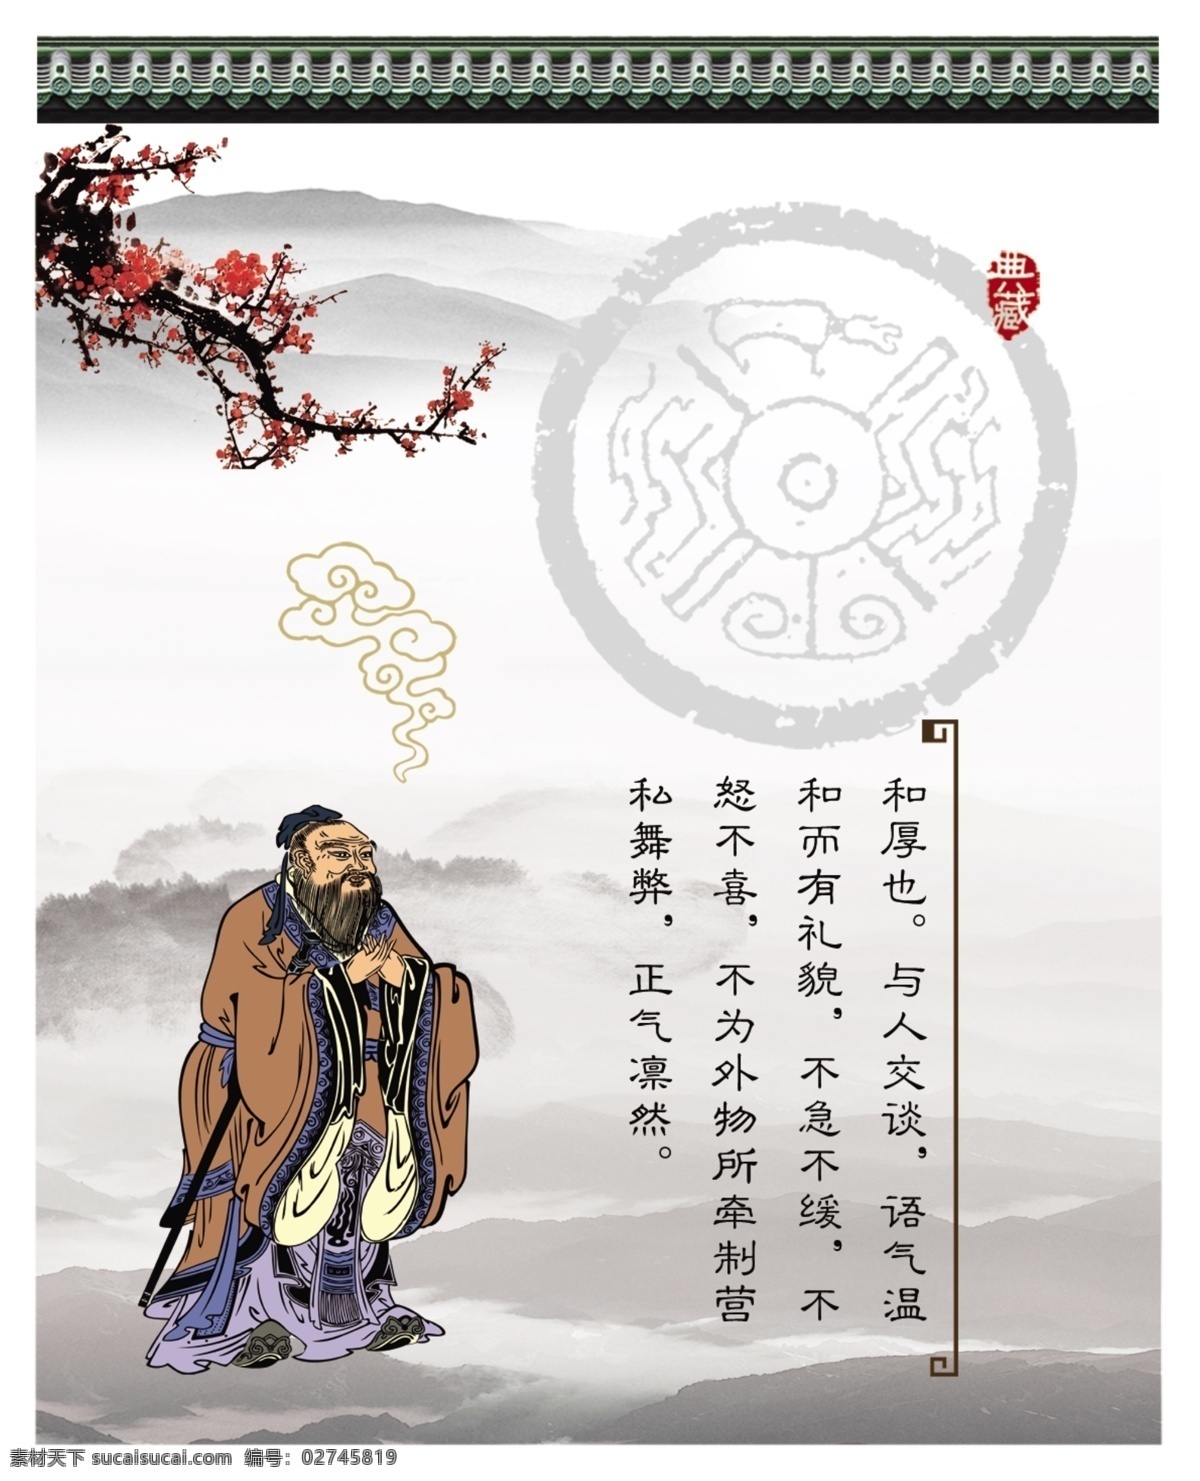 道德文化 道德 文化 孔子 国学 水墨 中国 礼仪 传统